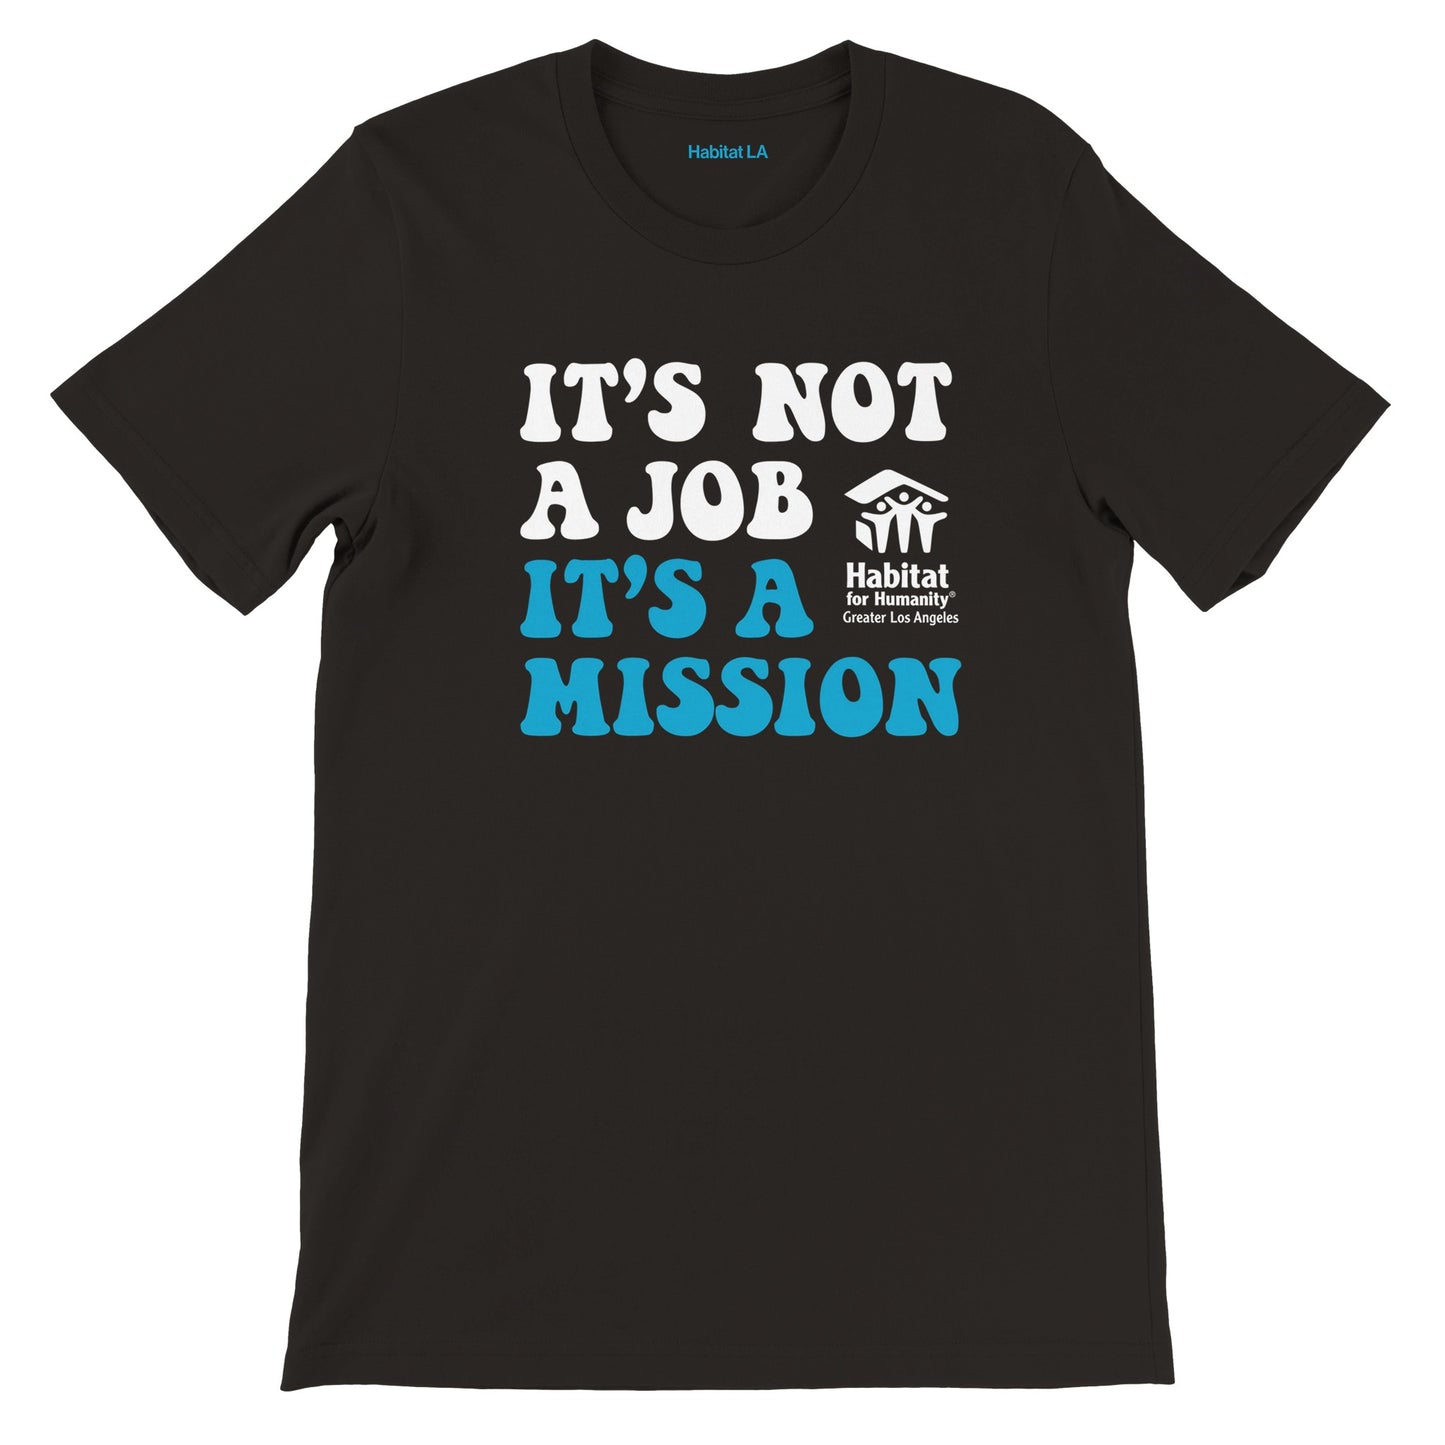 "It's a Mission" Premium Unisex Crewneck T-shirt